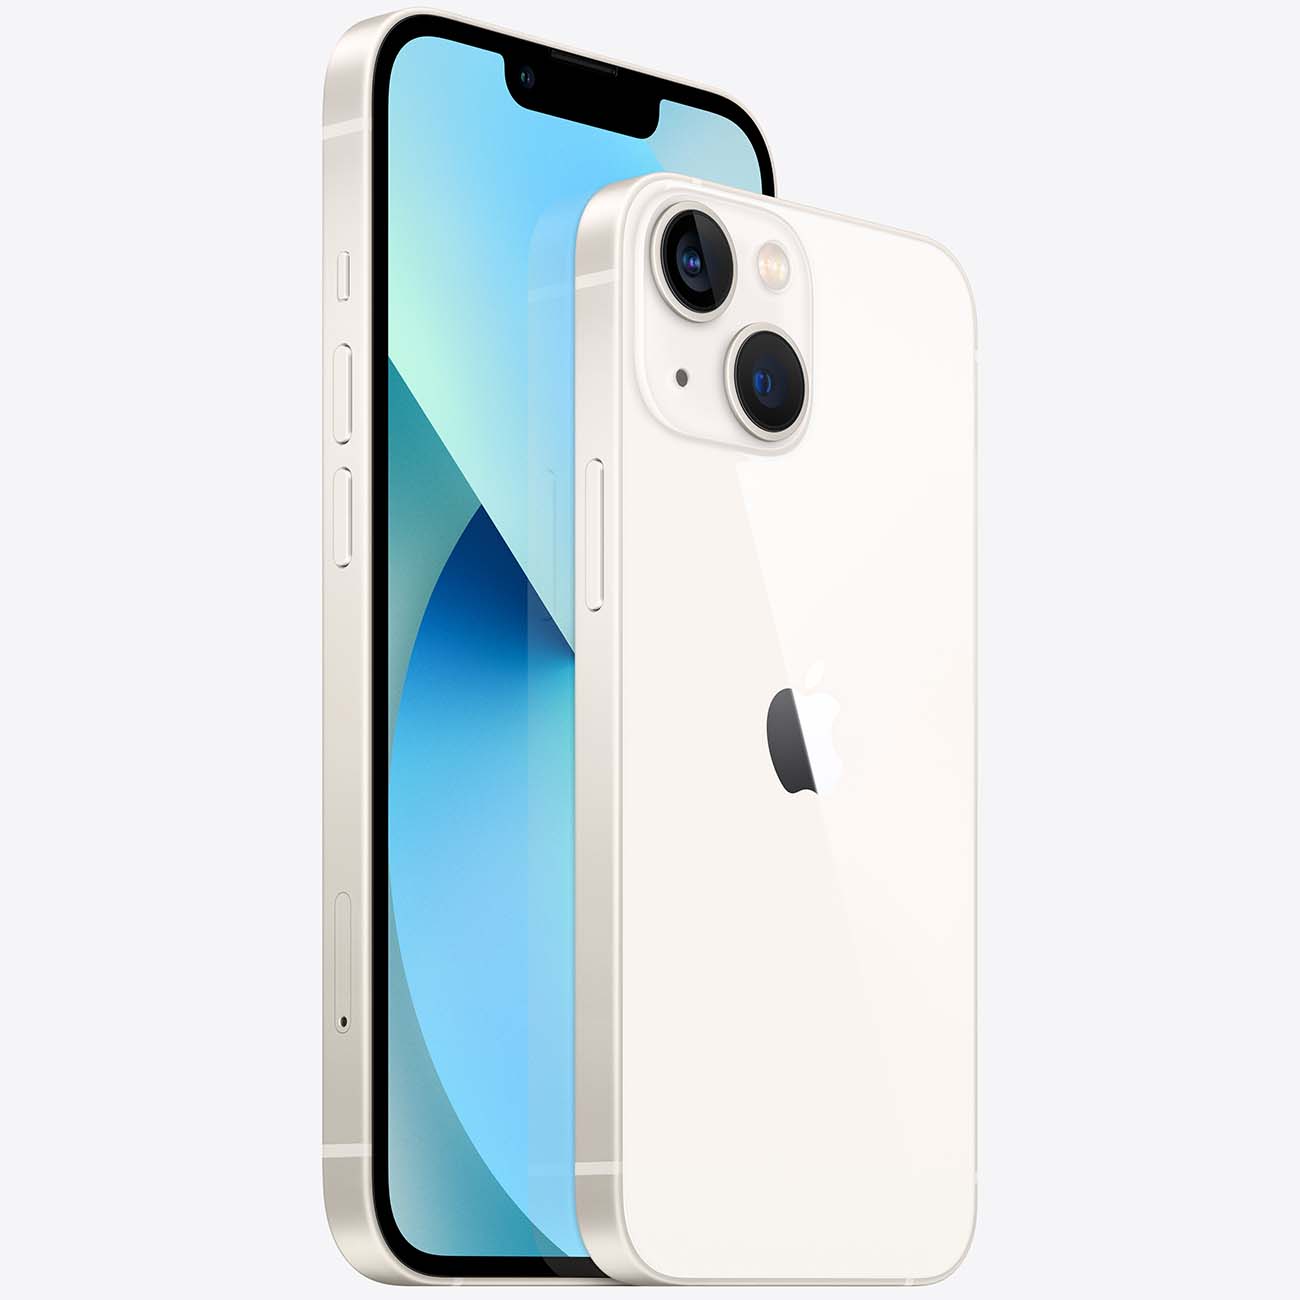 Купить смартфон apple iphone 13 128gb starlight Apple iPhone 13 в официальном магазине Apple, Samsung, Xiaomi. iPixel.ru Купить, заказ, кредит, рассрочка, отзывы,  характеристики, цена,  фотографии, в подарок.